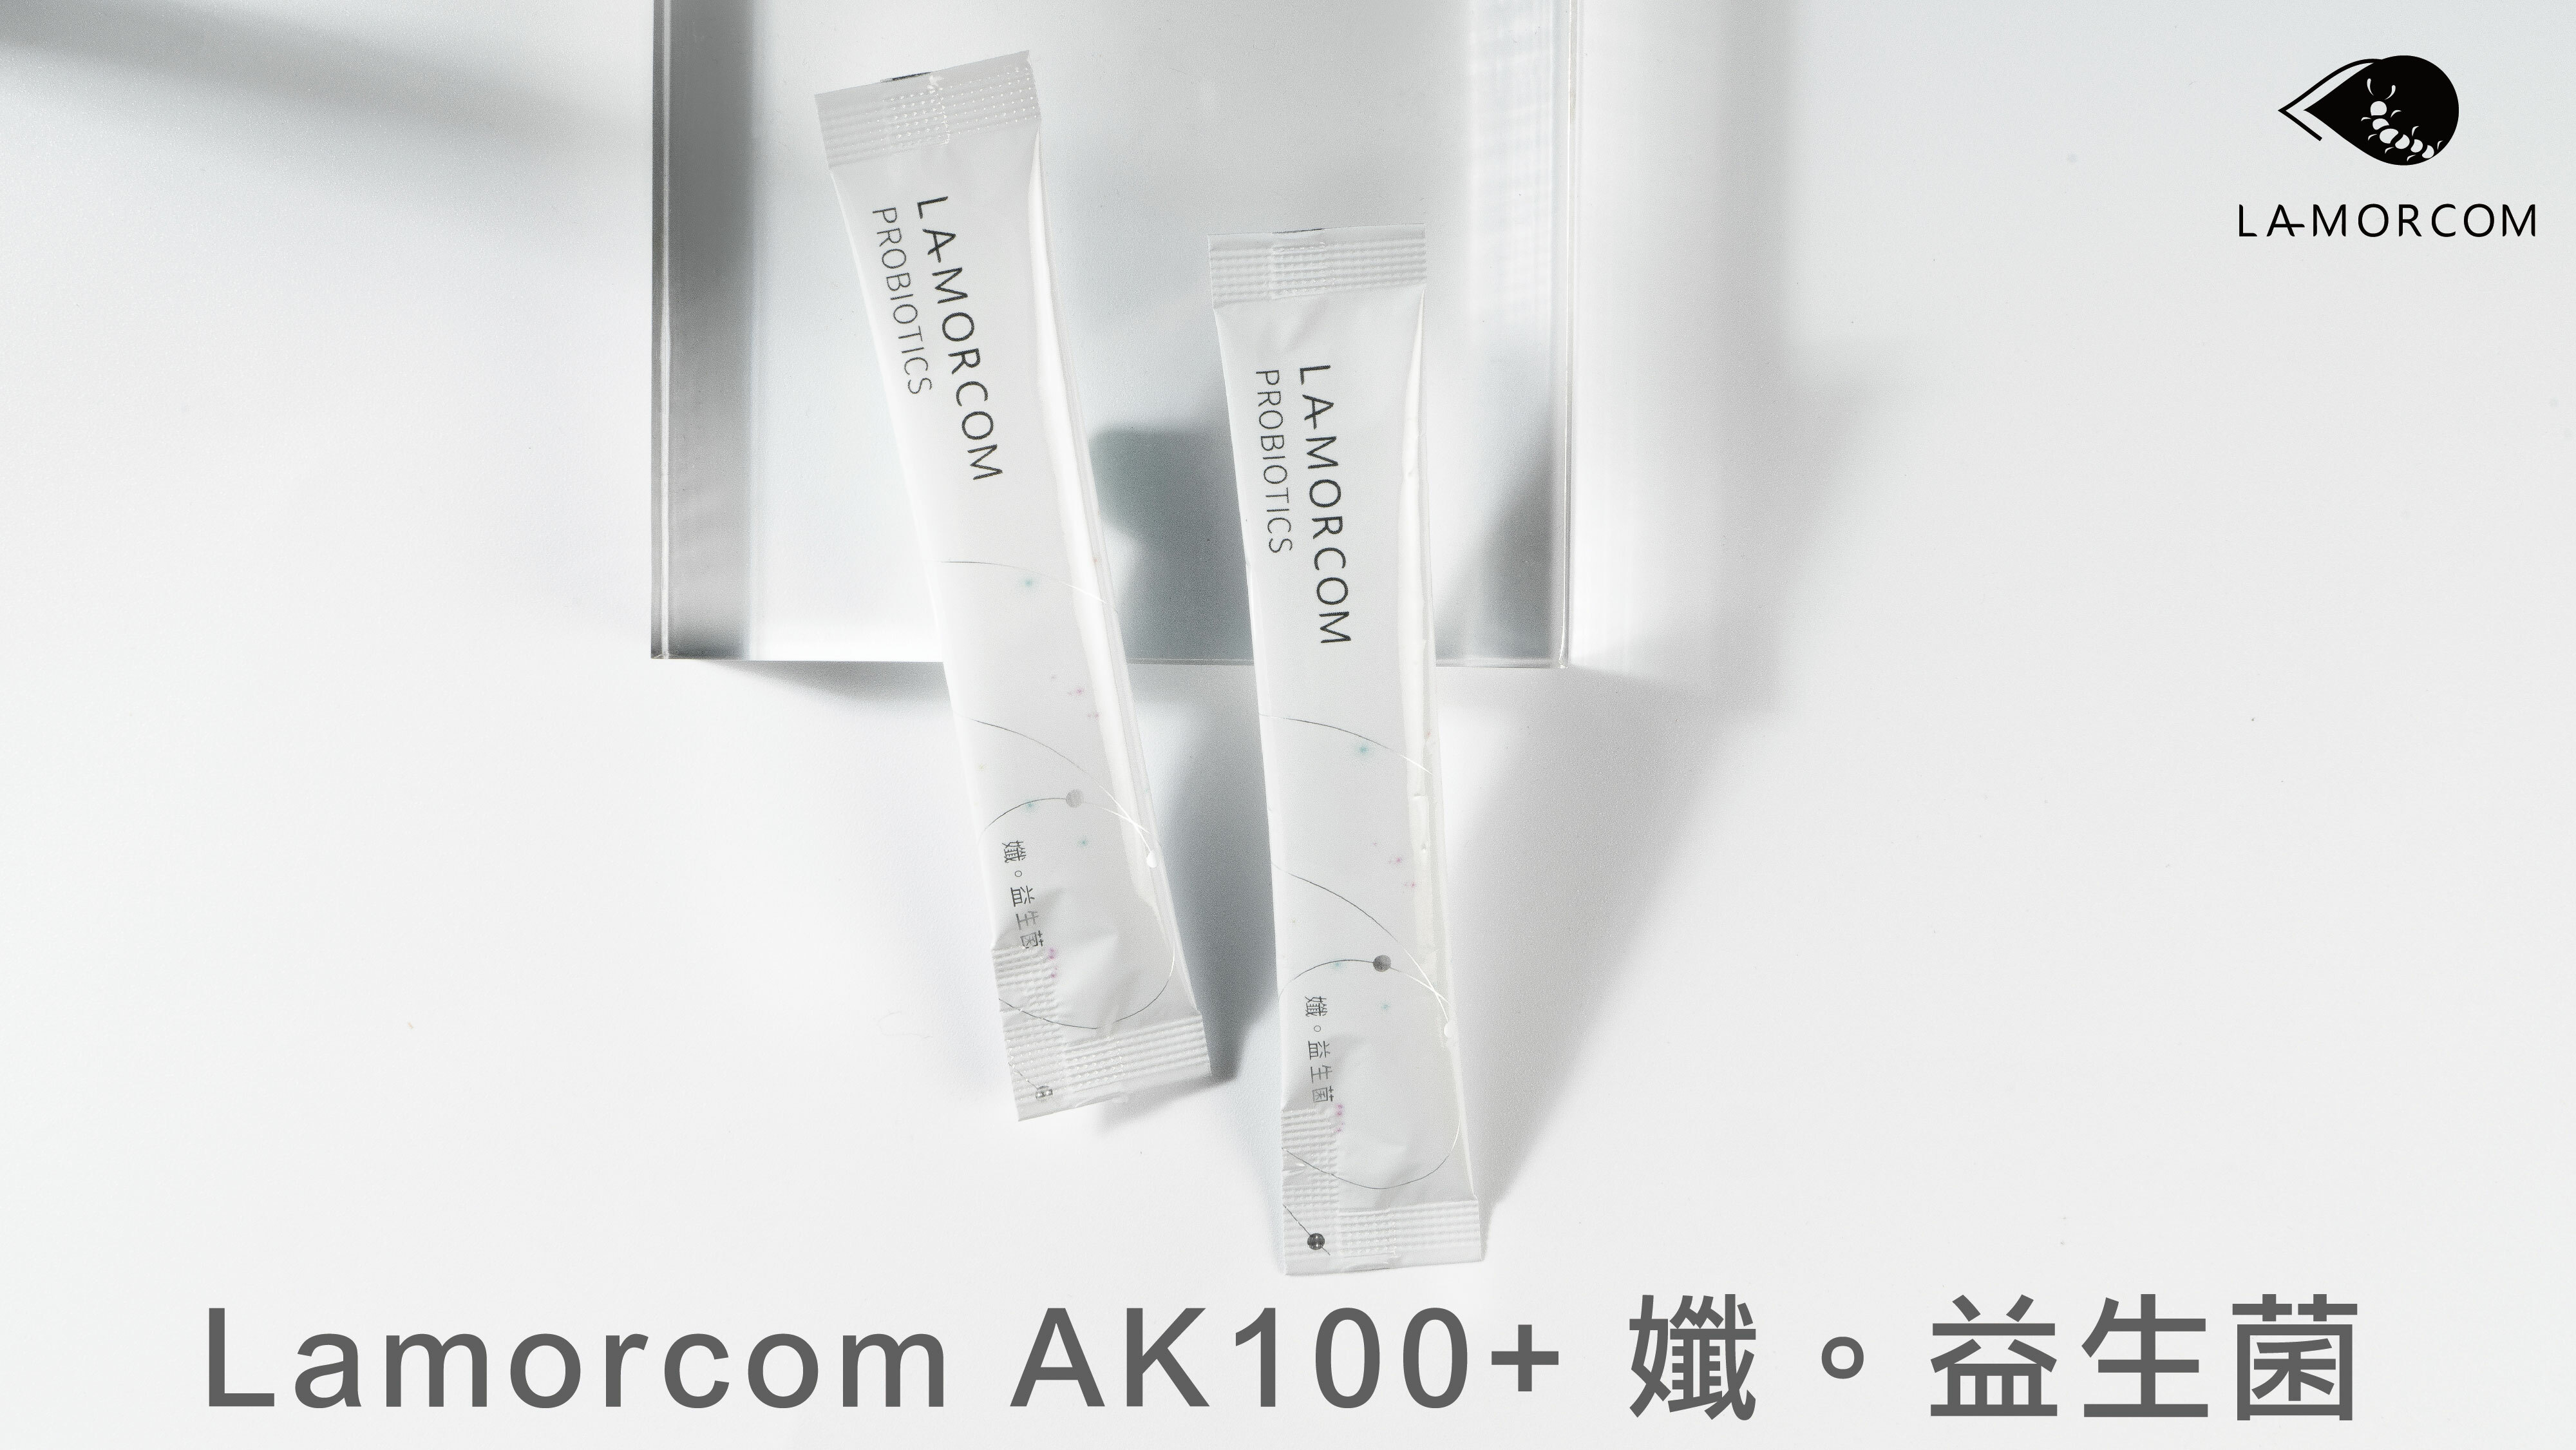 益生菌種類有哪些？Lamorcom AK100+ 孅。益生菌